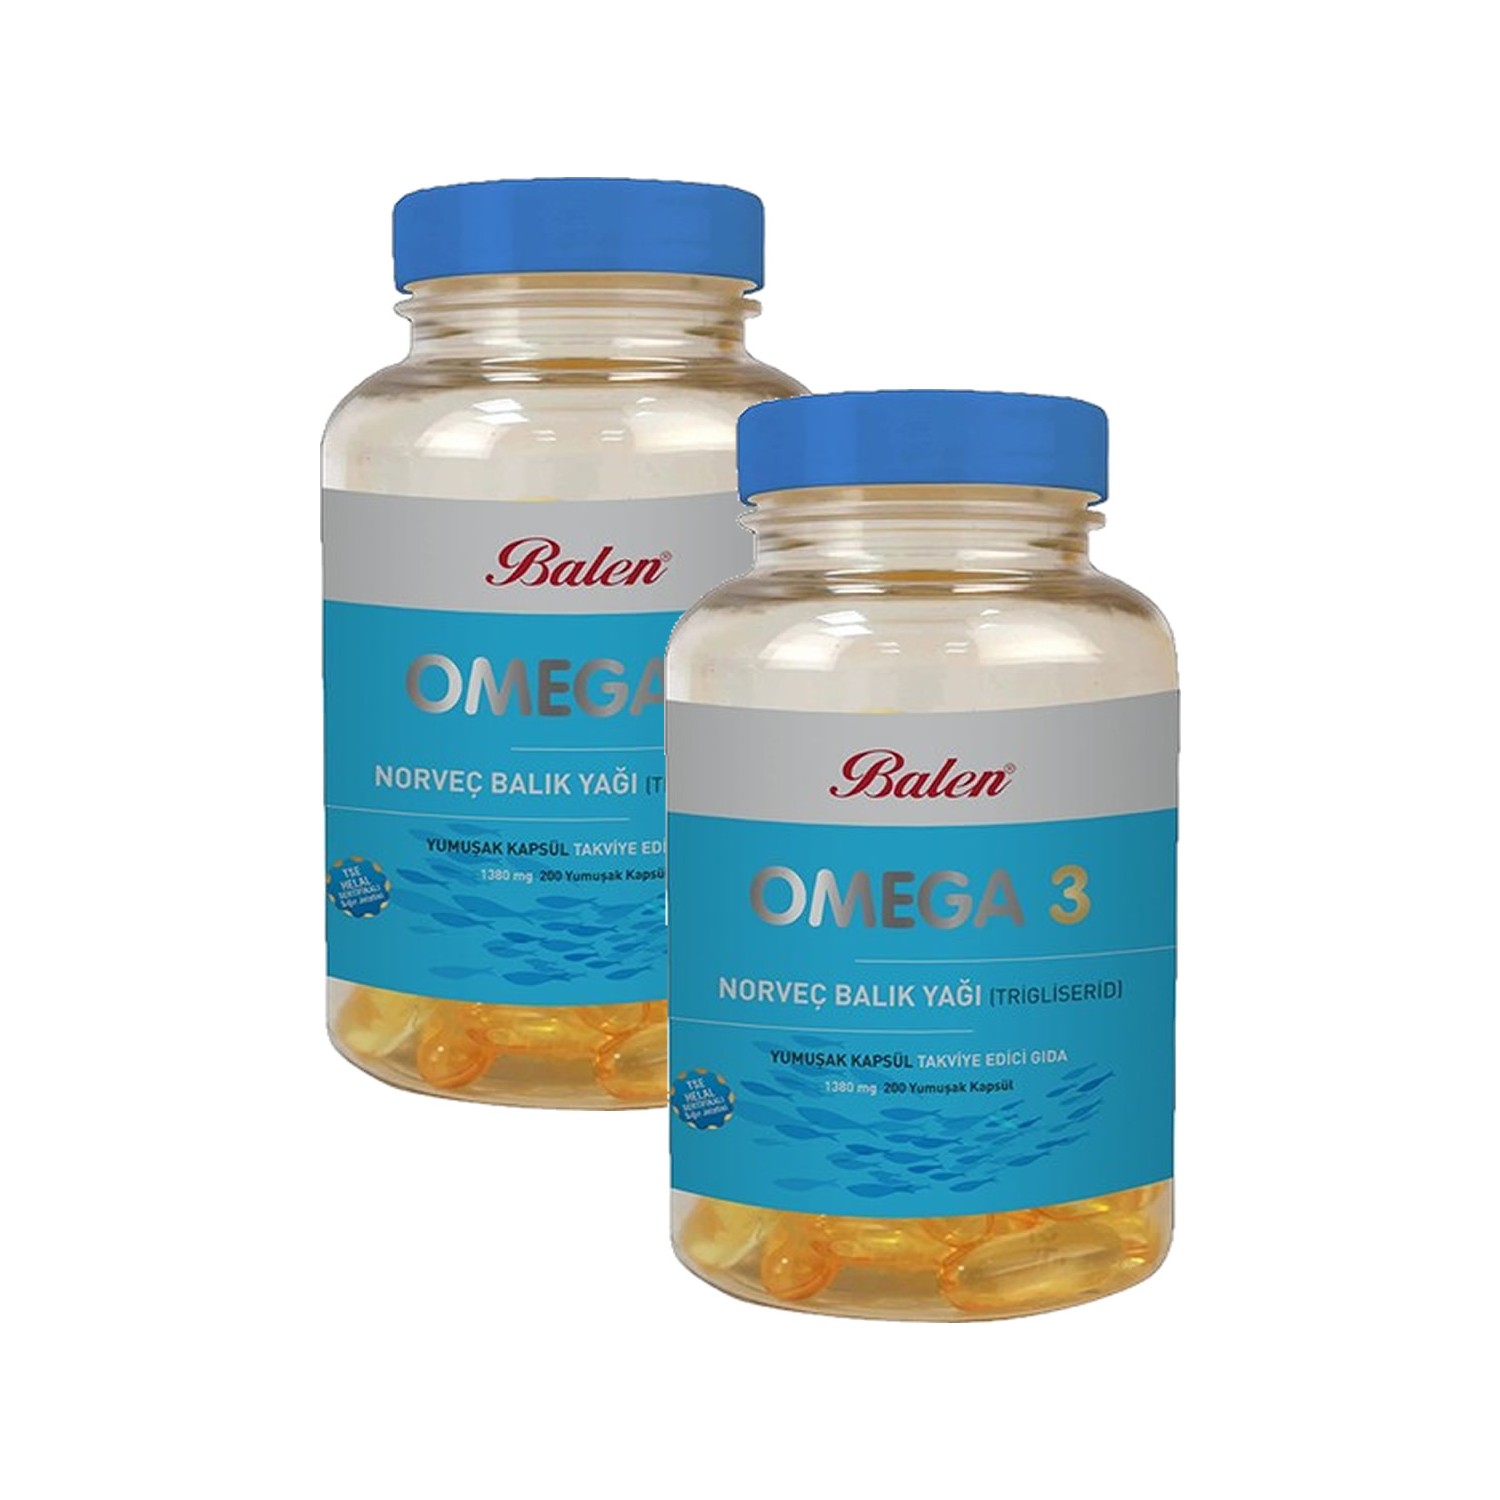 Рыбий жир Balen Omega-3 1380мг, 2 упаковки по 200 капсул норвежский рыбий жир balen omega 3 триглицерид 1380 мг 200 капсул